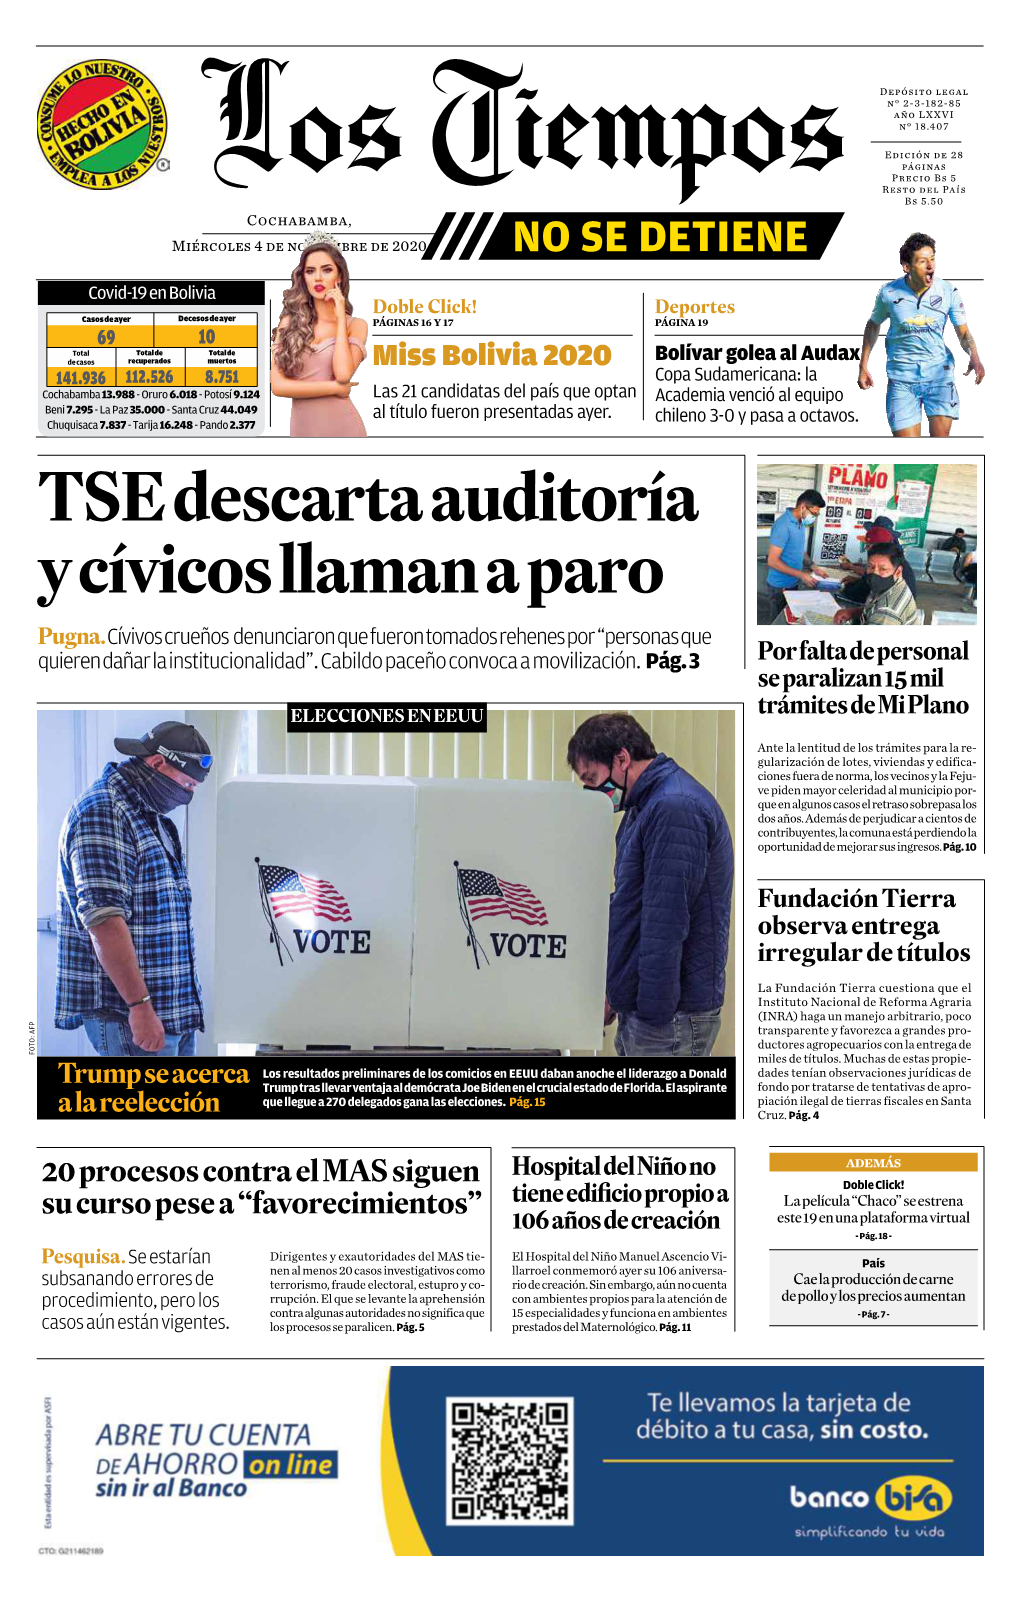 TSE Descarta Auditoría Y Cívicos Llaman a Paro